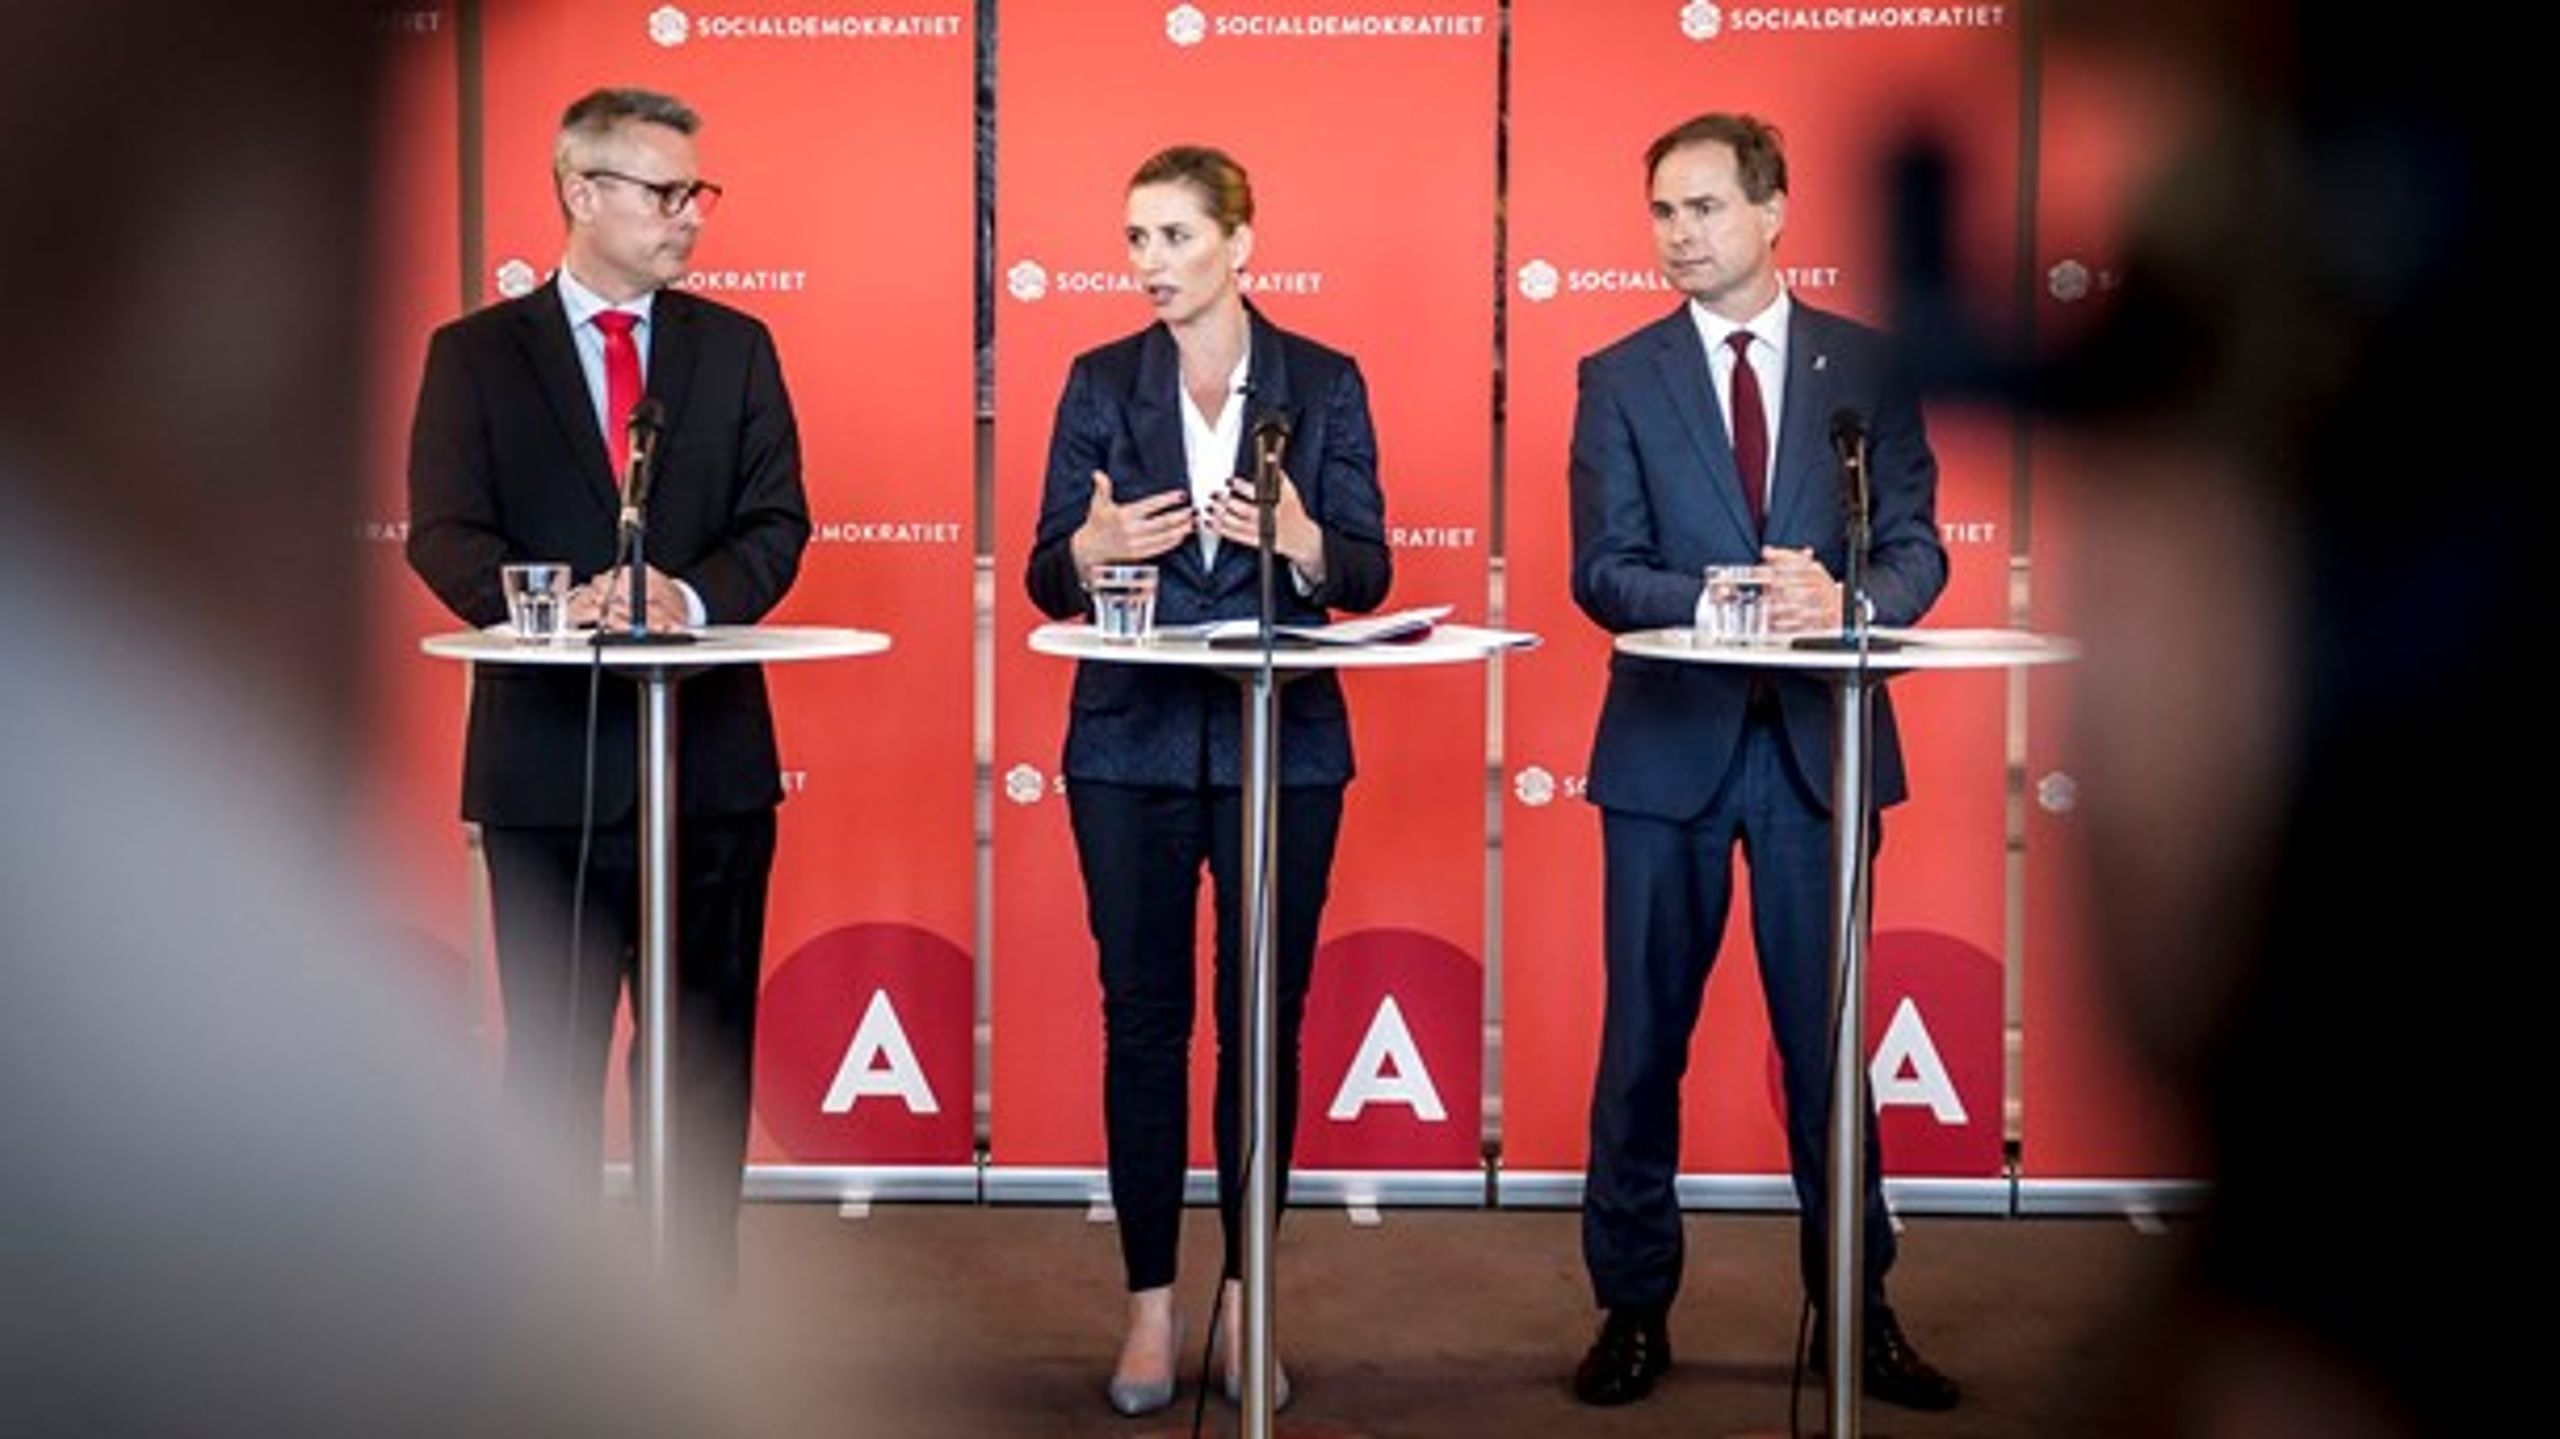 S-formand Mette Frederiksen præsenterede mandag en opdateret udgave af partiets 2025-plan sammen med Henrik Sass Larsen og Nicolai Wammen.